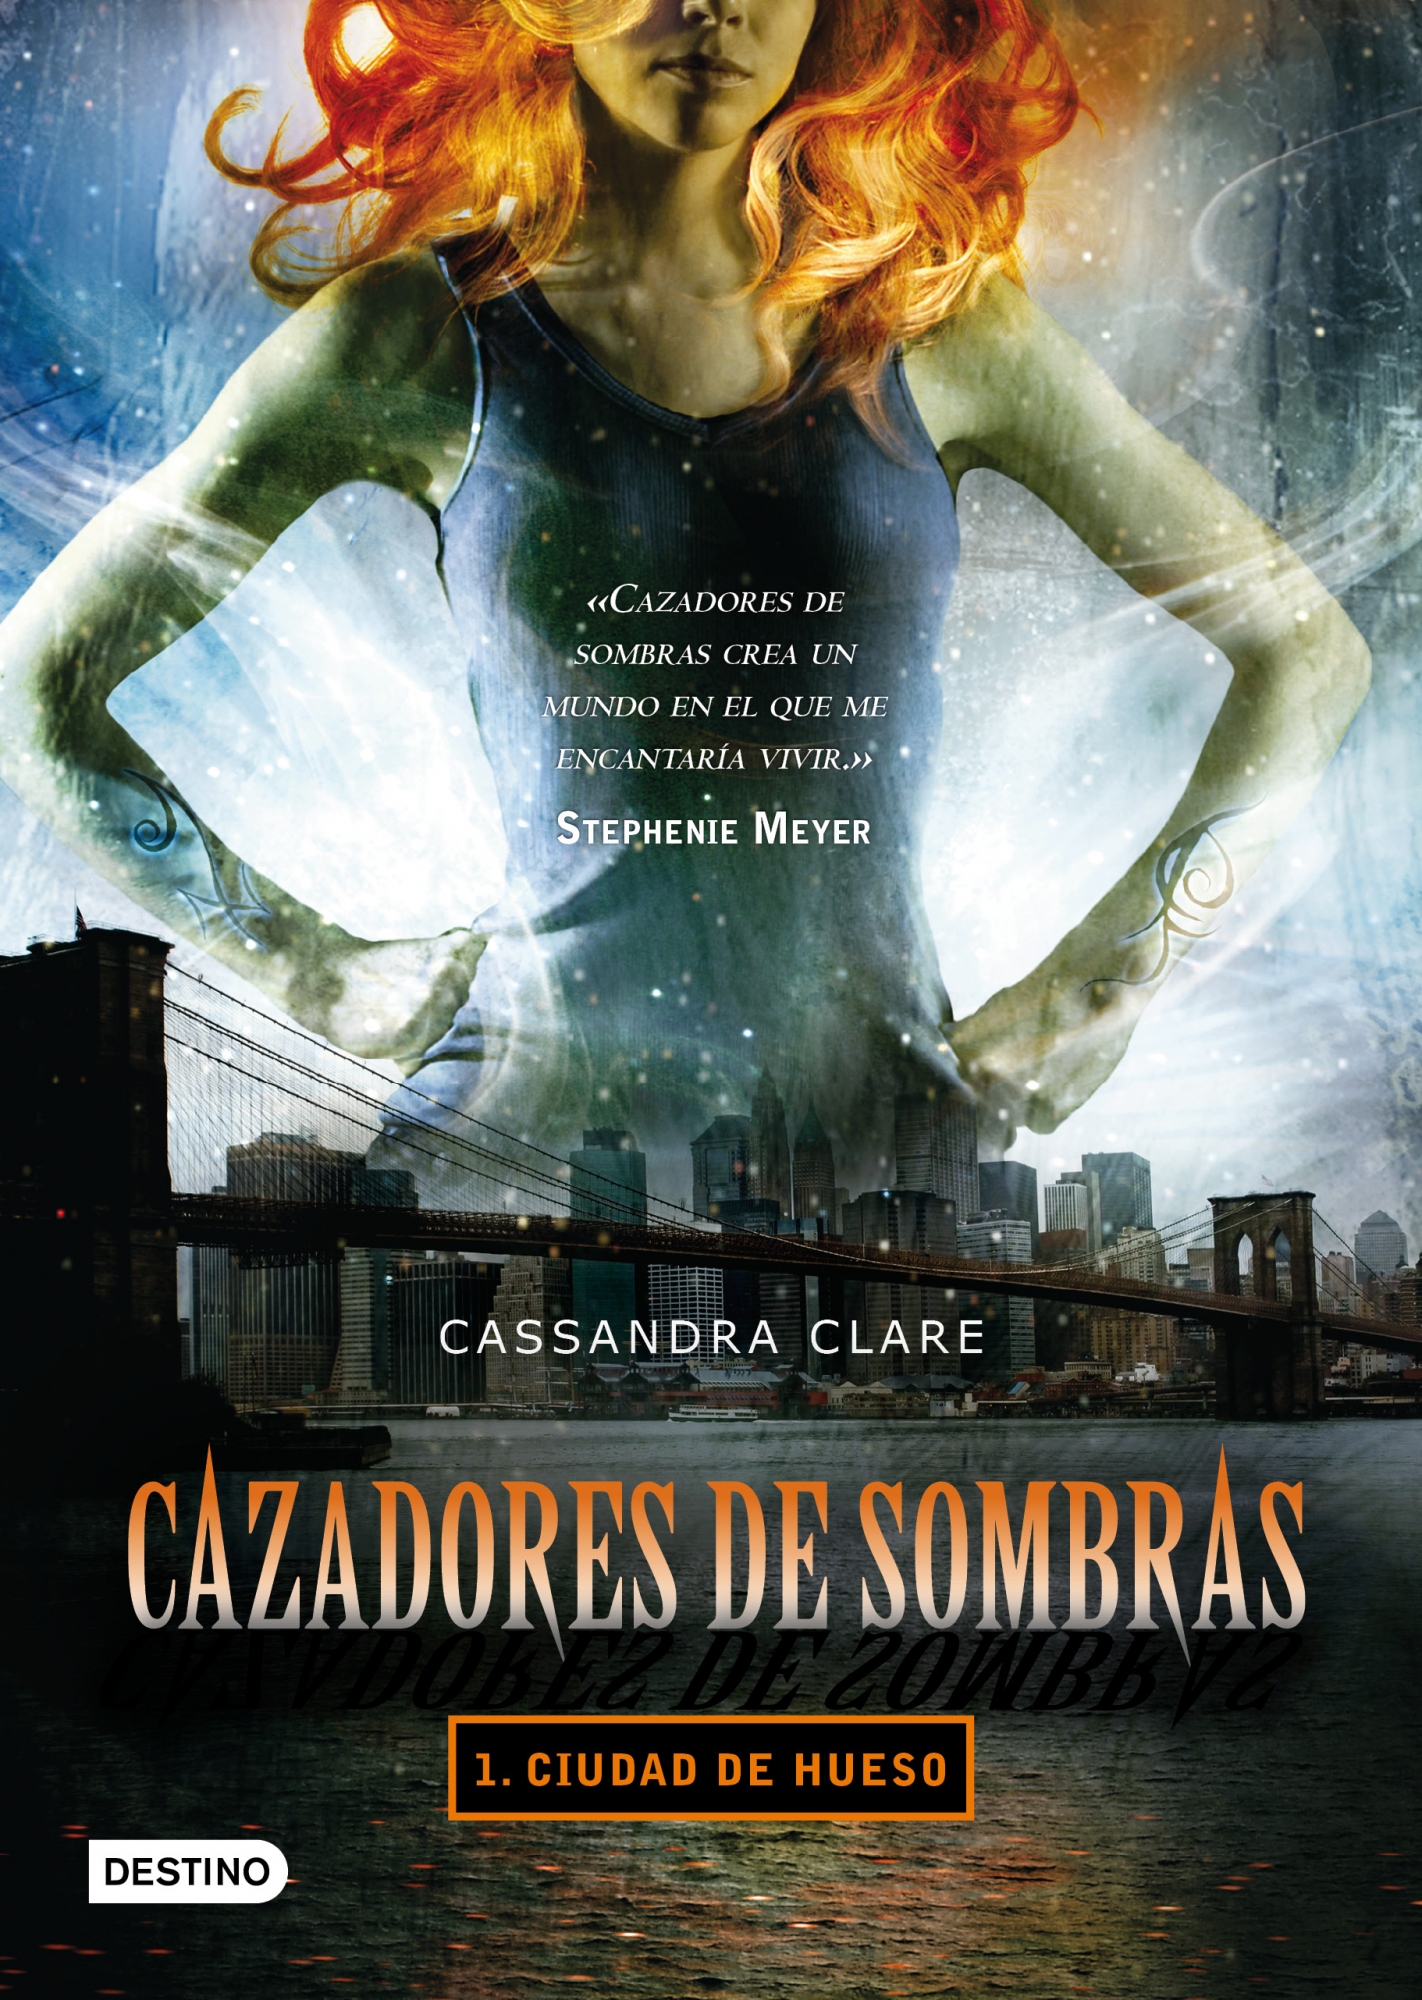 Libro de audio Cazadores de sombras: Ciudad de hueso [1] – Cassandra Clare